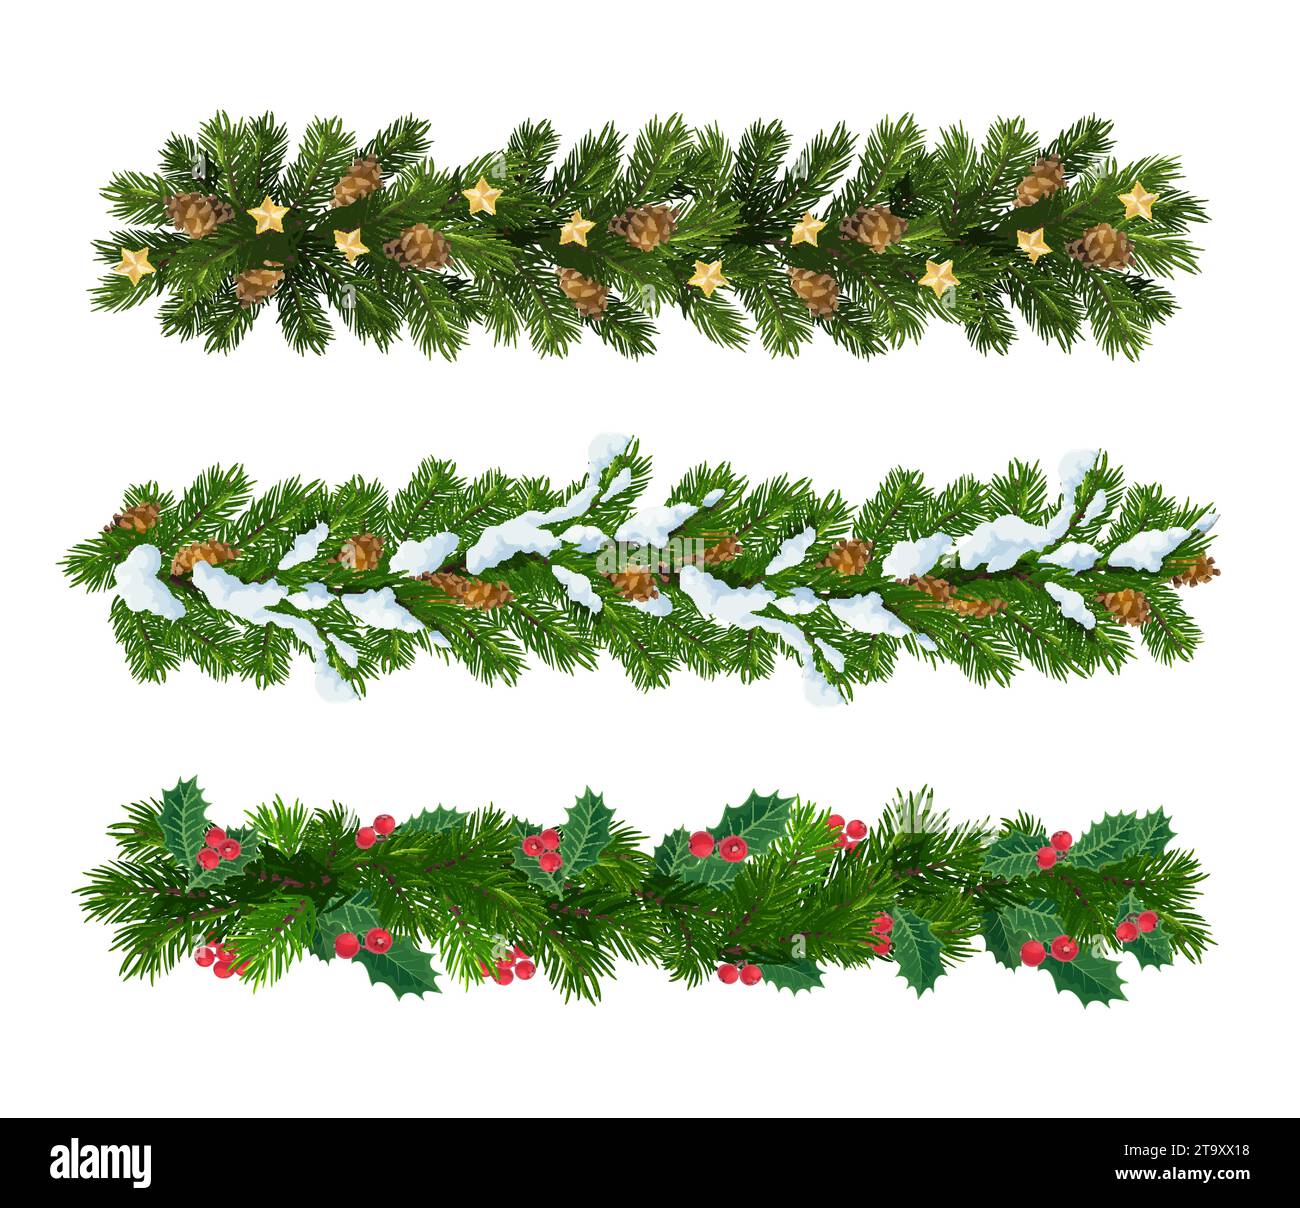 Rami di abete natalizio, ghirlande isolate di pino verde vettoriale o confini con aghi realistici decorati con stelle dorate, neve, coni di pino e foglie di bacca. Decorazioni in conifere natalizie Illustrazione Vettoriale